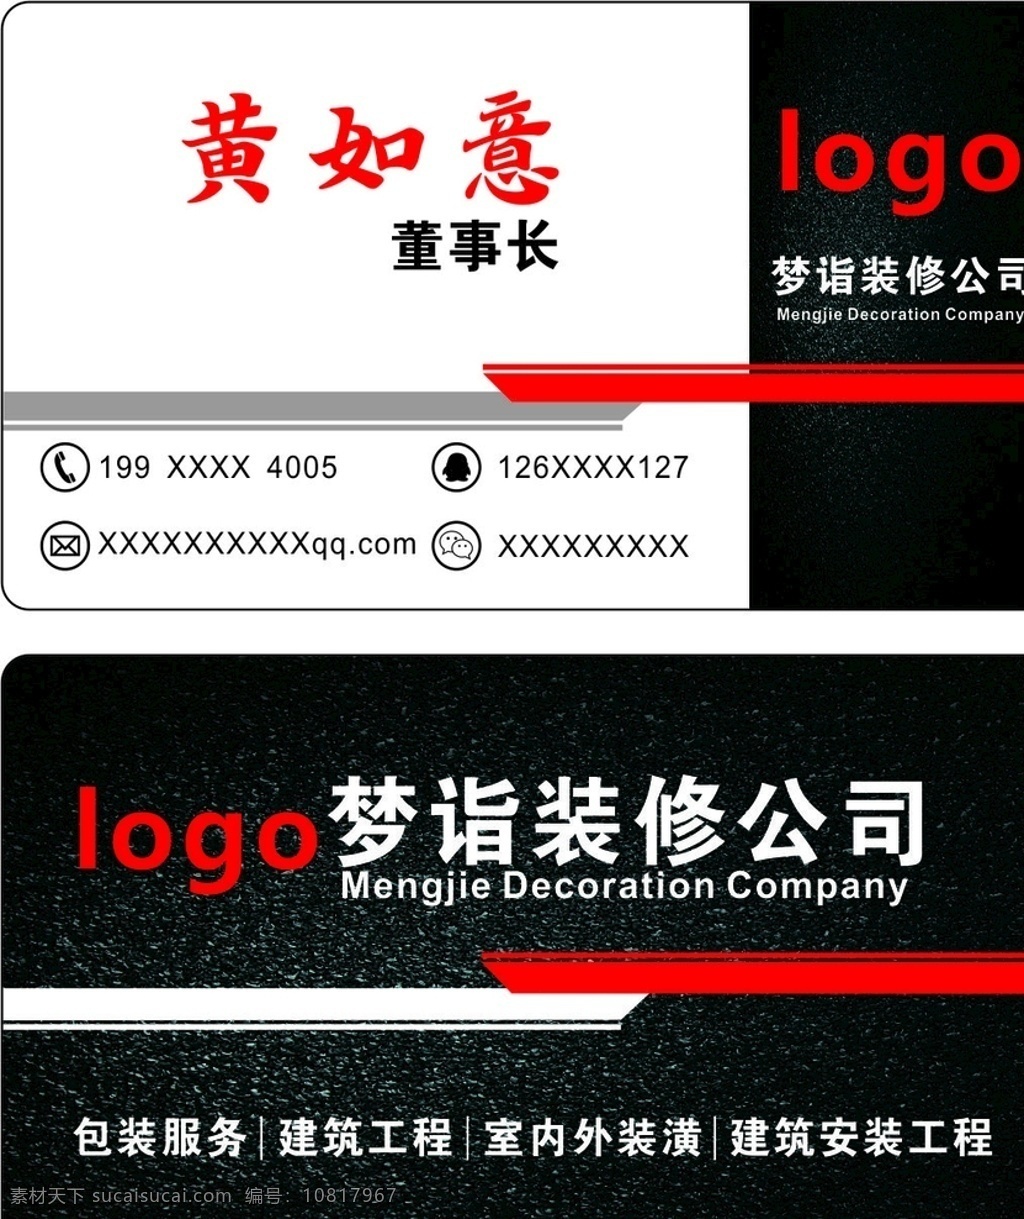 装修公司名片 名片 图标 形状 装修公司 logo